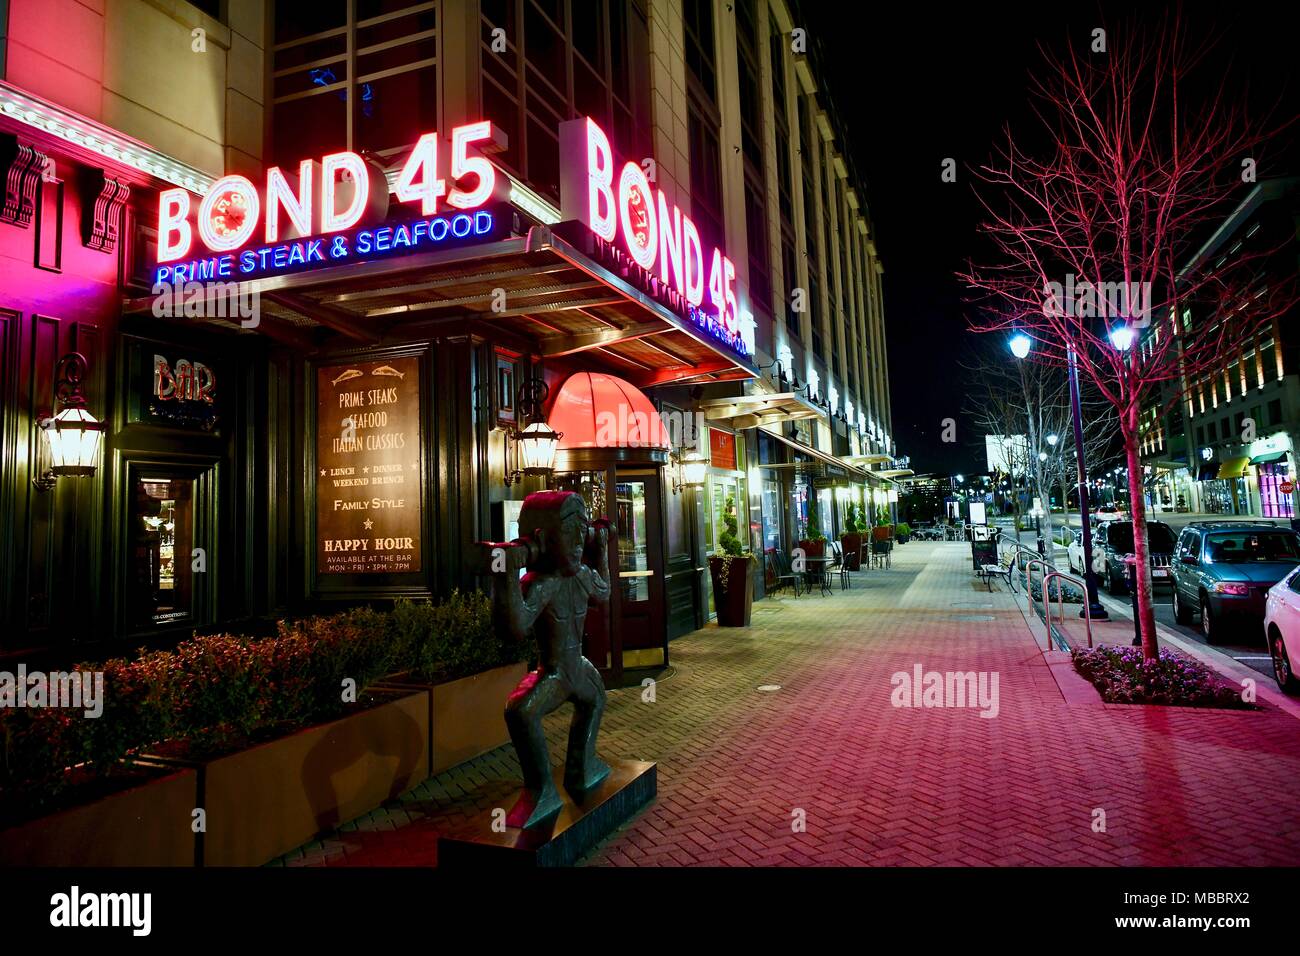 Bond 45 innescare la bistecca e il ristorante di pesce al porto Nazionale di Washington DC, Stati Uniti d'America Foto Stock